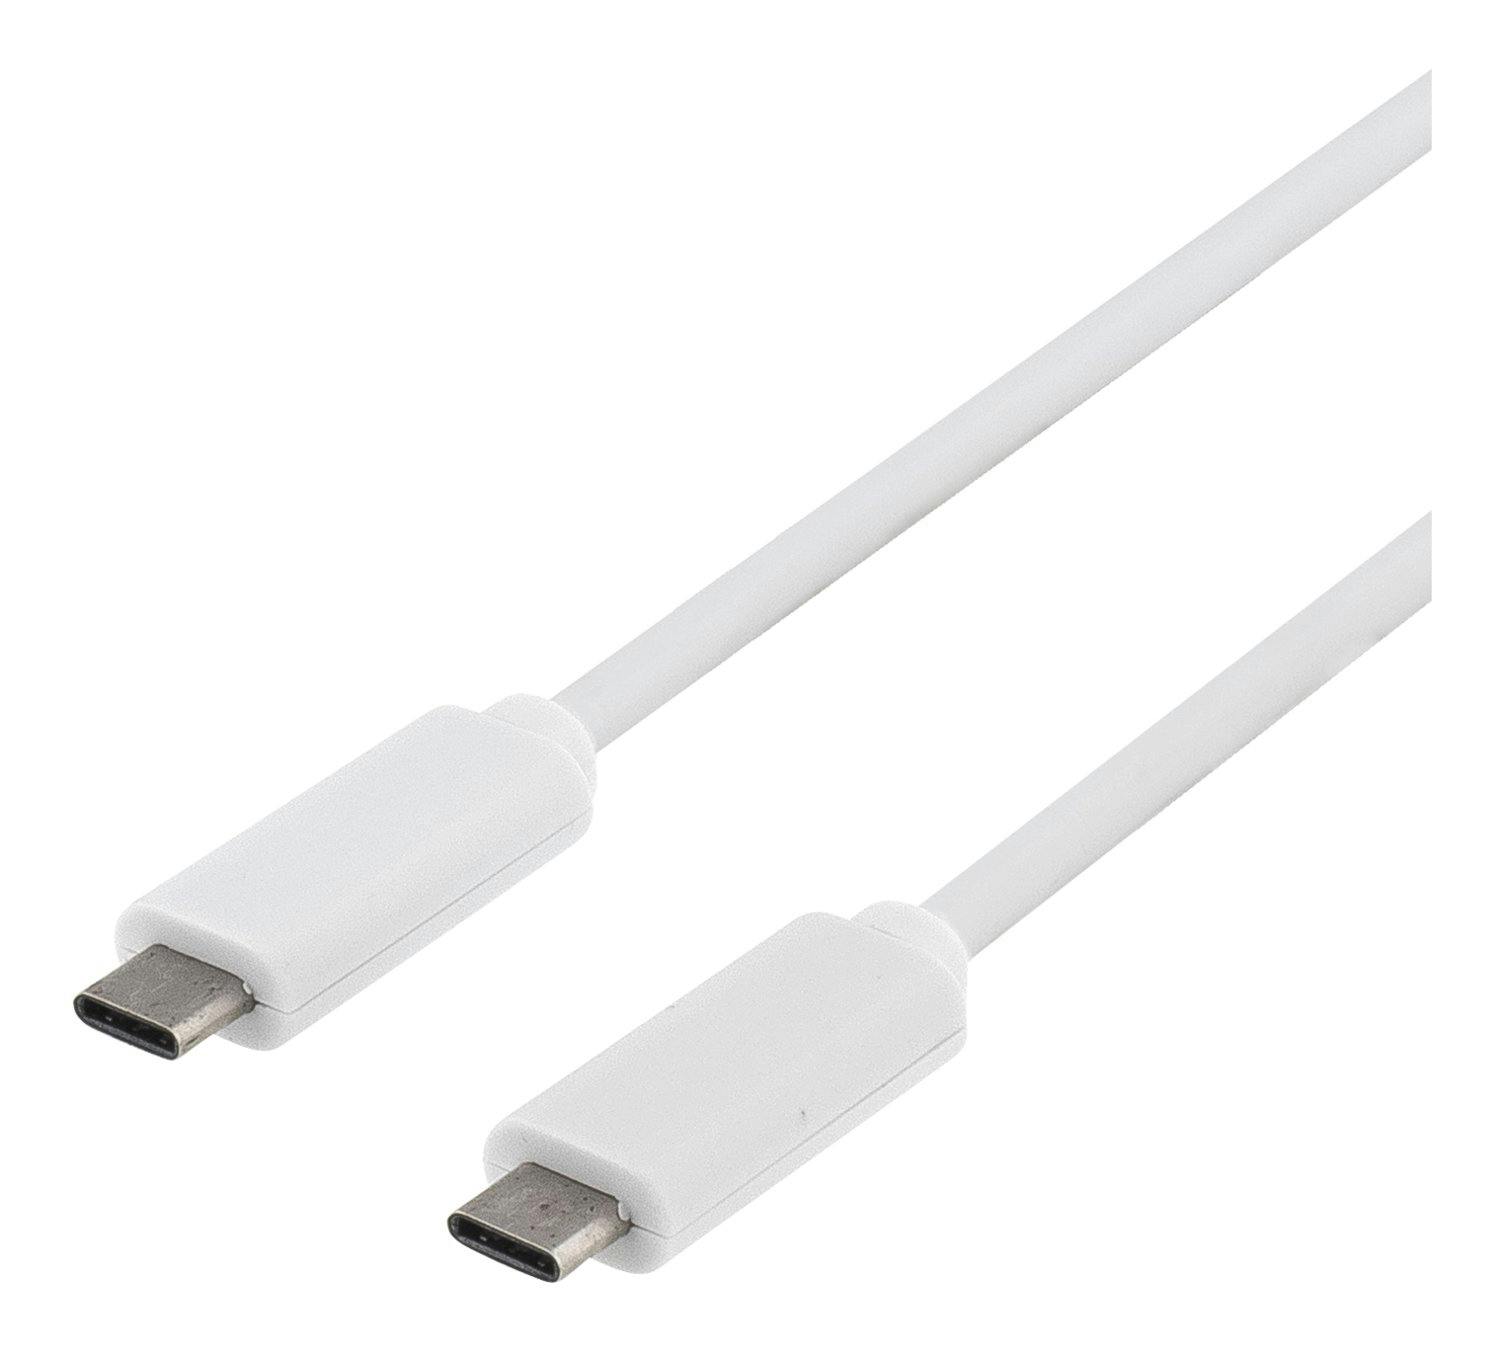 DELTACO USB 3.1 kabel, Gen 1, Typ C - Typ C, 0,5m, 3A, vit